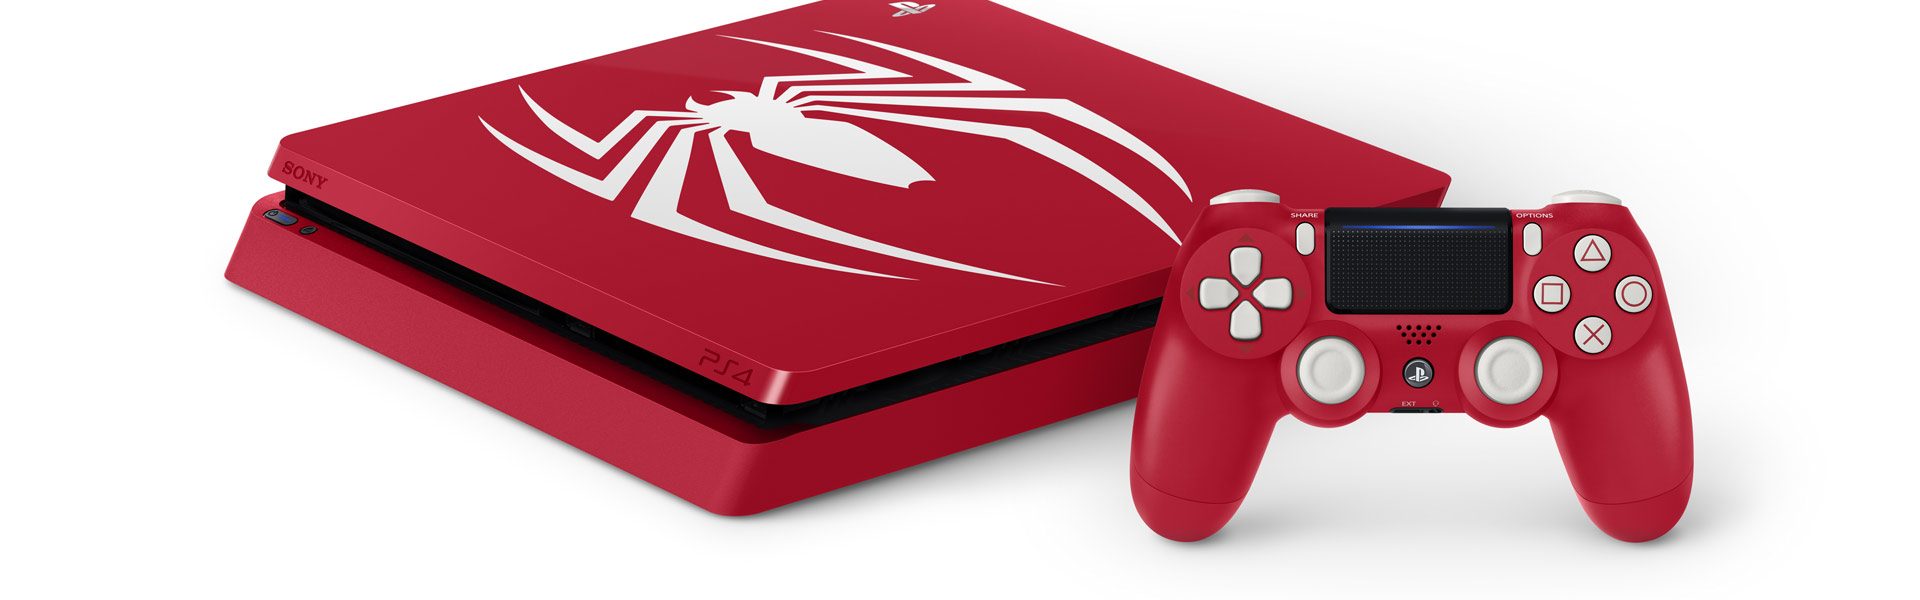 playstation 4 1tb spiderman bundle